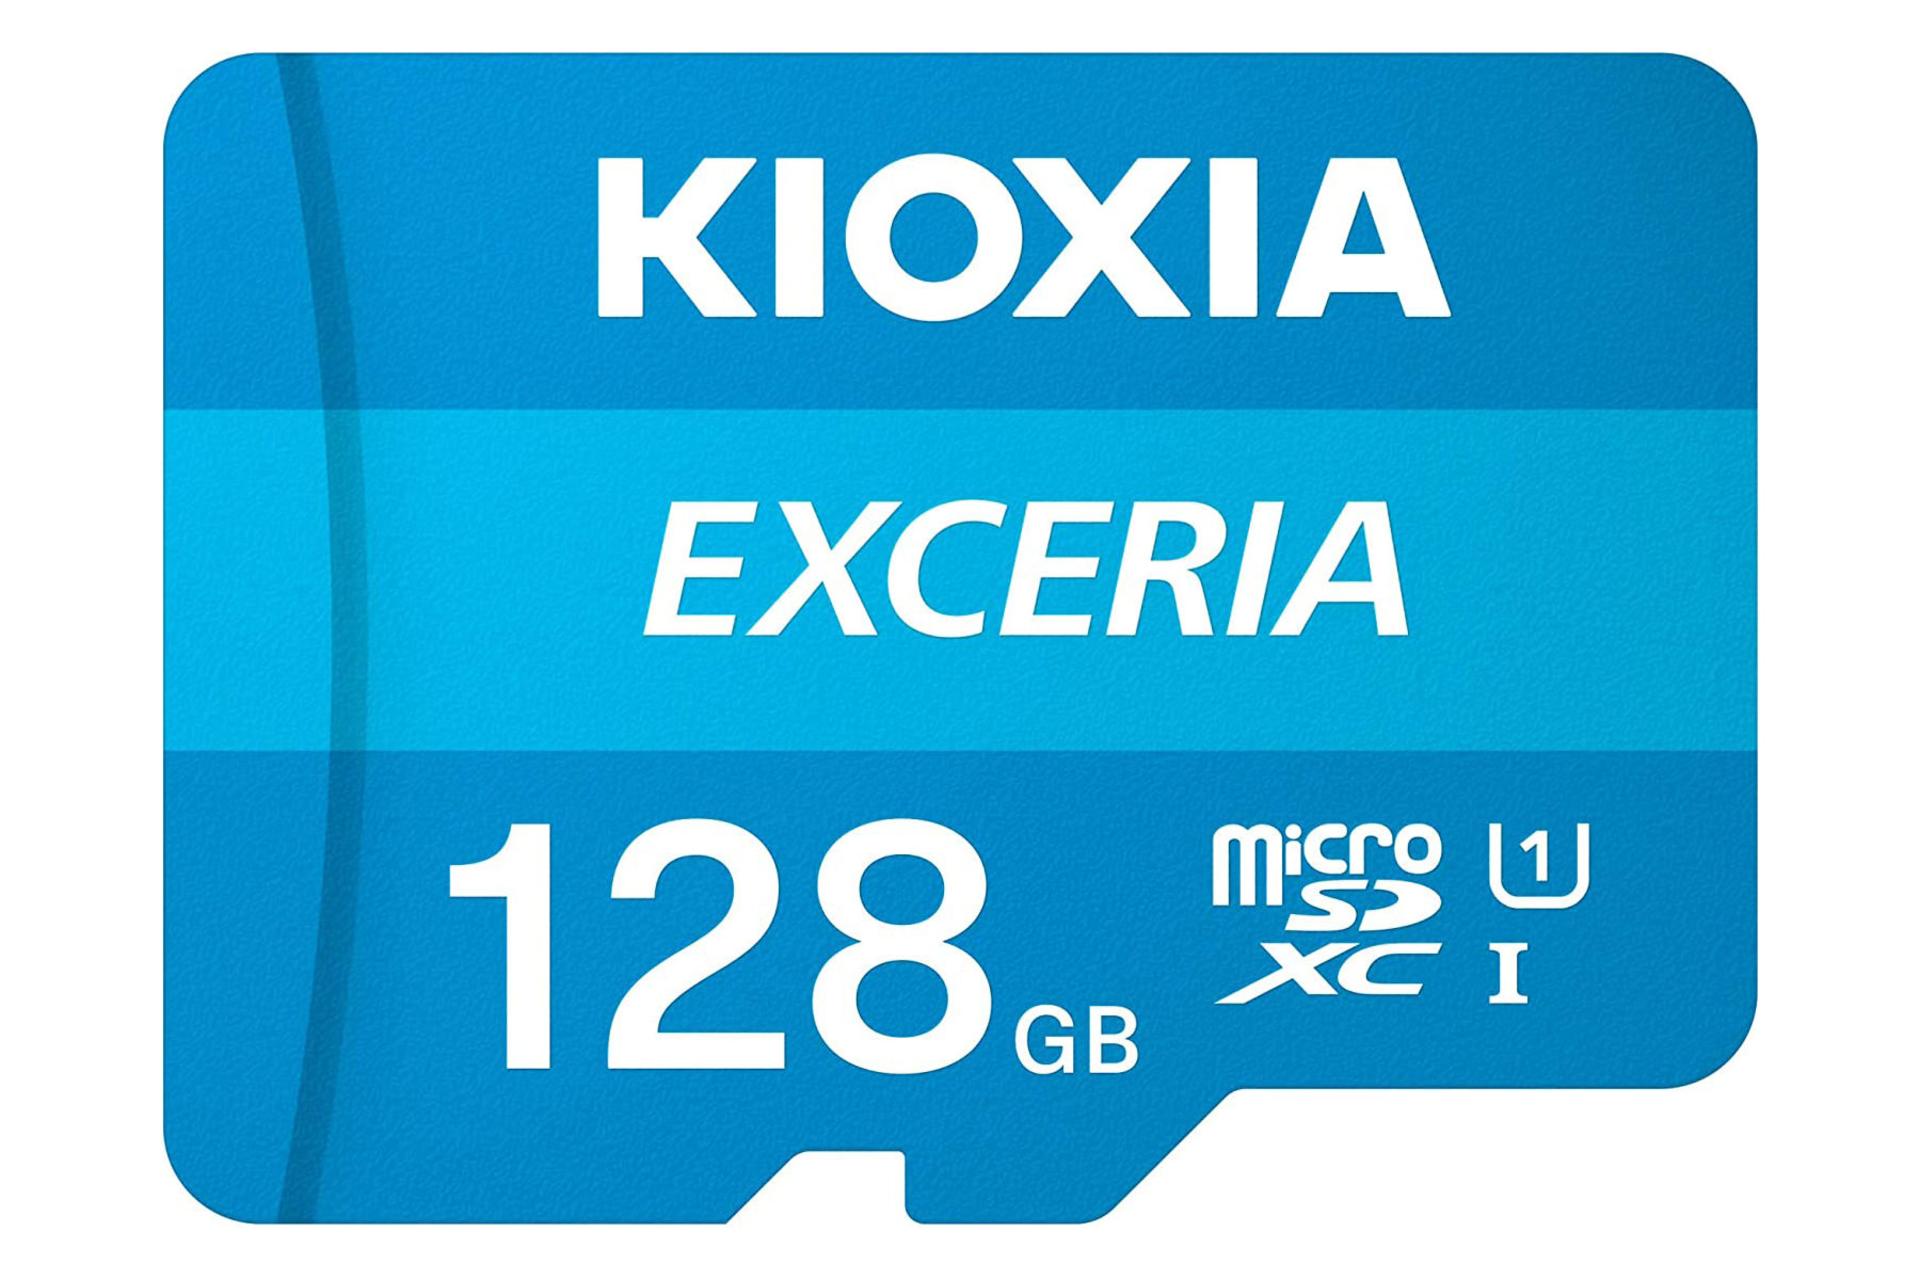 کارت حافظه کیوکسیا microSDXC با ظرفیت 128 گیگابایت مدل EXCERIA کلاس 10